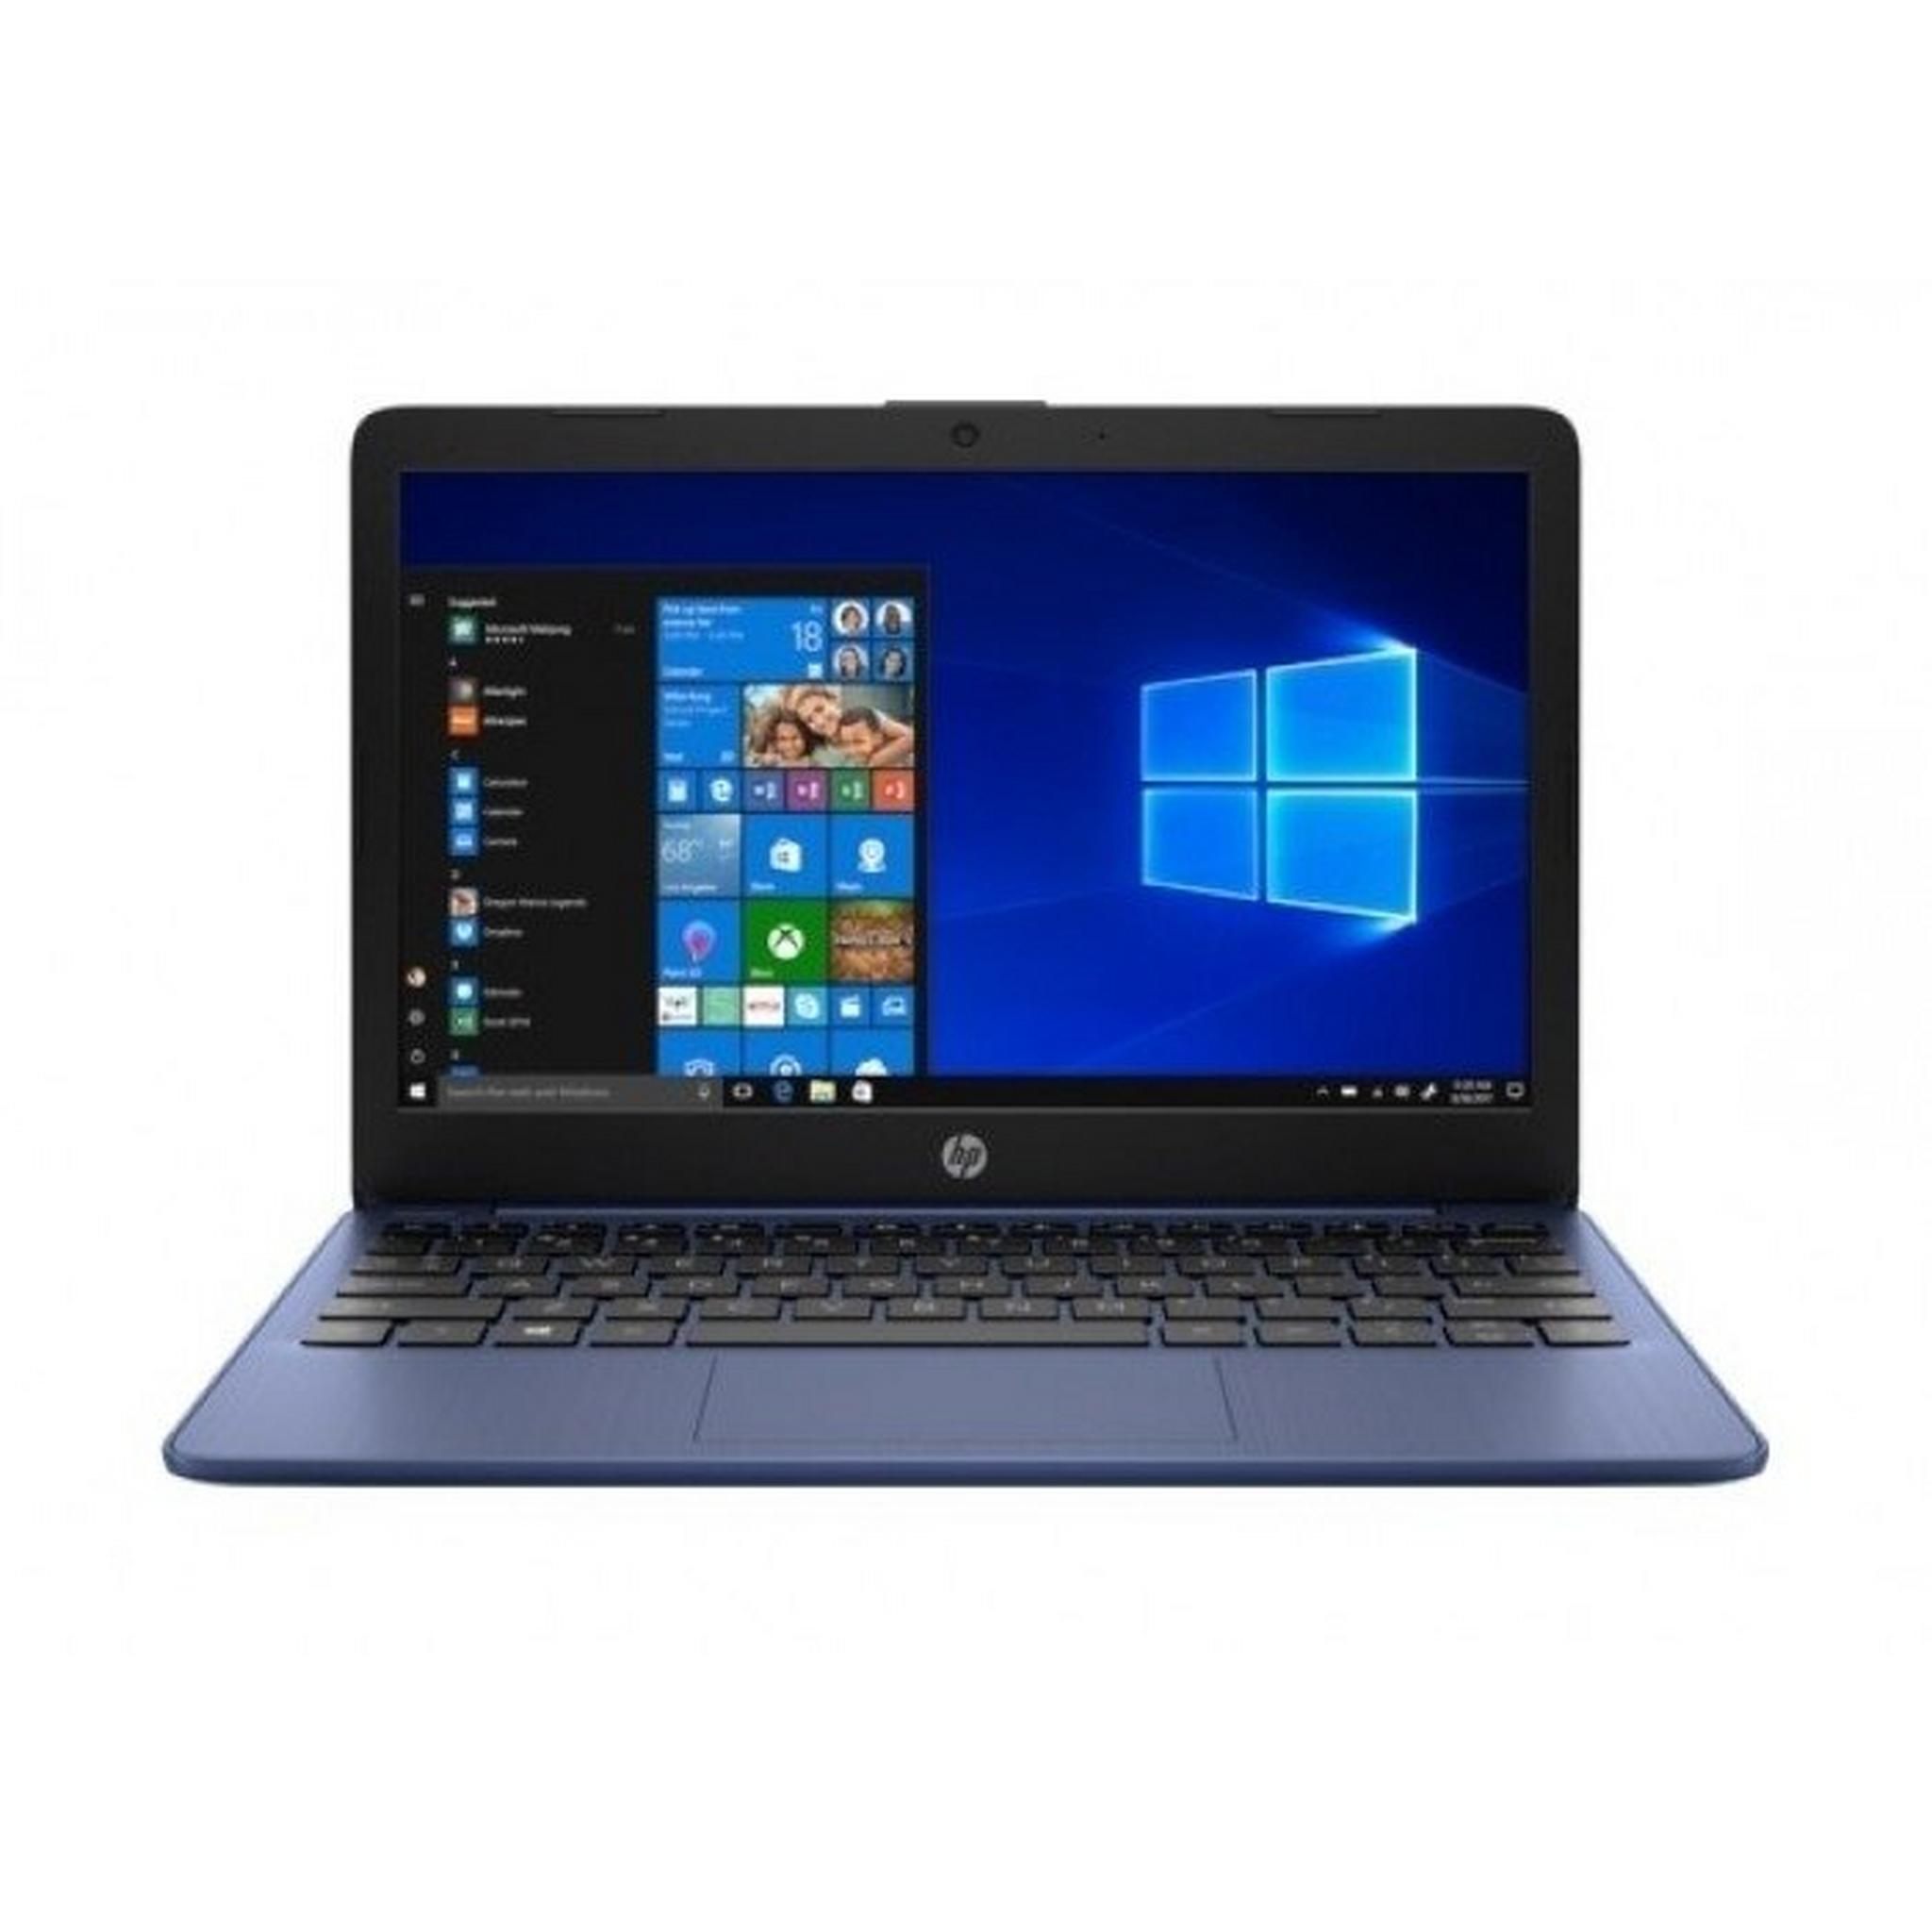 HP Stream Intel Celeron N4020 4GB RAM, 64GB SSD, 11.6-inch Laptop - Blue